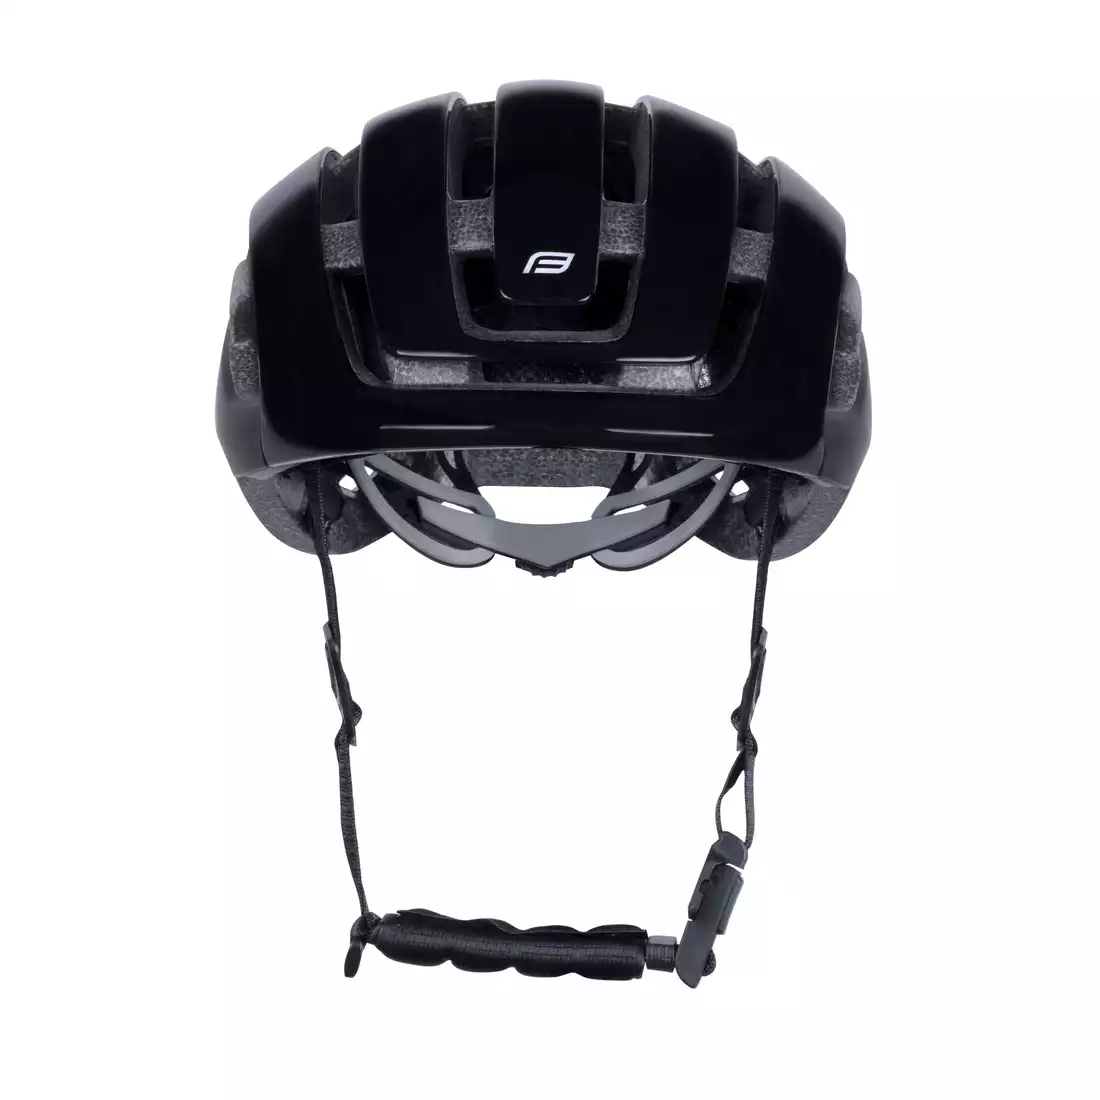 FORCE NEO MIPS Bicycle helmet, matte black